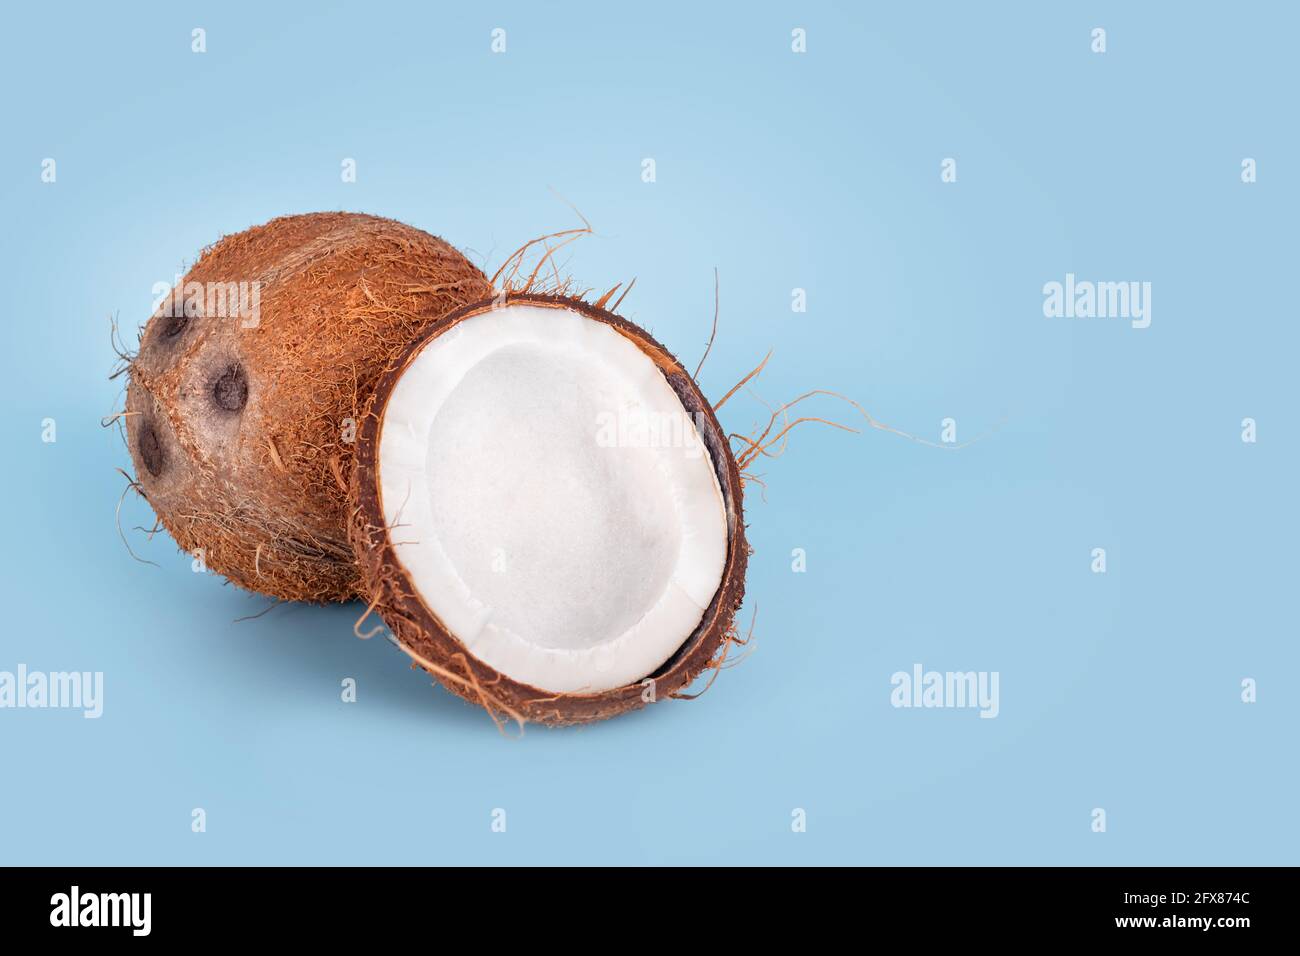 Noci di cocco intere e incrinate su sfondo azzurro. Frutta di cocco sbucciata che mostra i tre pori caratteristici. Tagliare a metà la chiocciola di cocco. Foto Stock